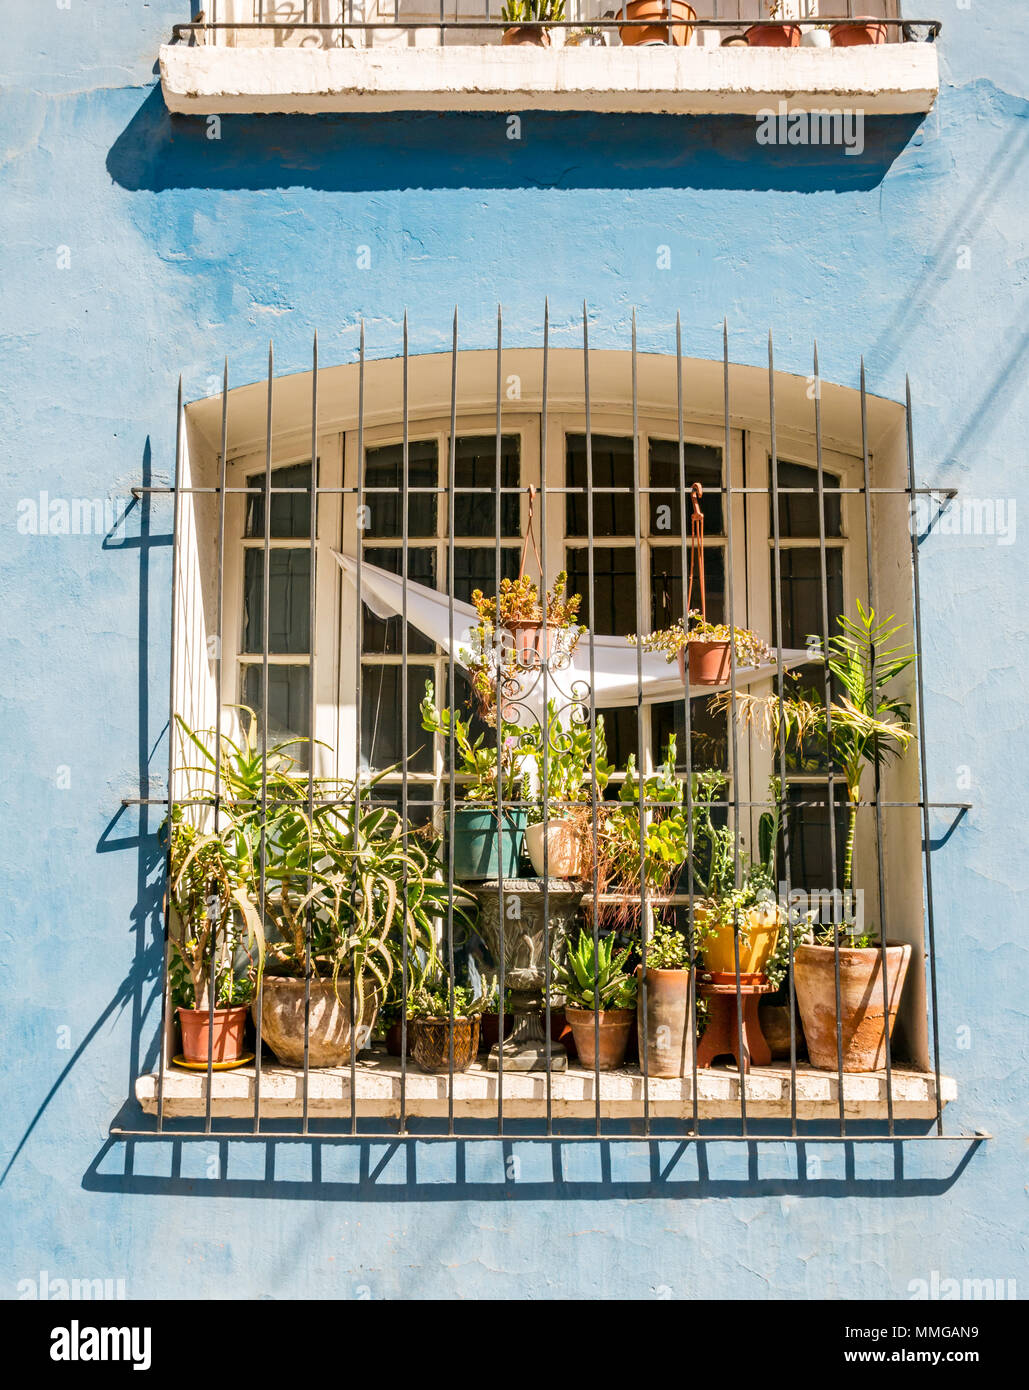 Bunt bemalten historischen Terrasse Haus Fenster mit Grill und Blumentöpfe, Providencia, Santiago, Chile Stockfoto